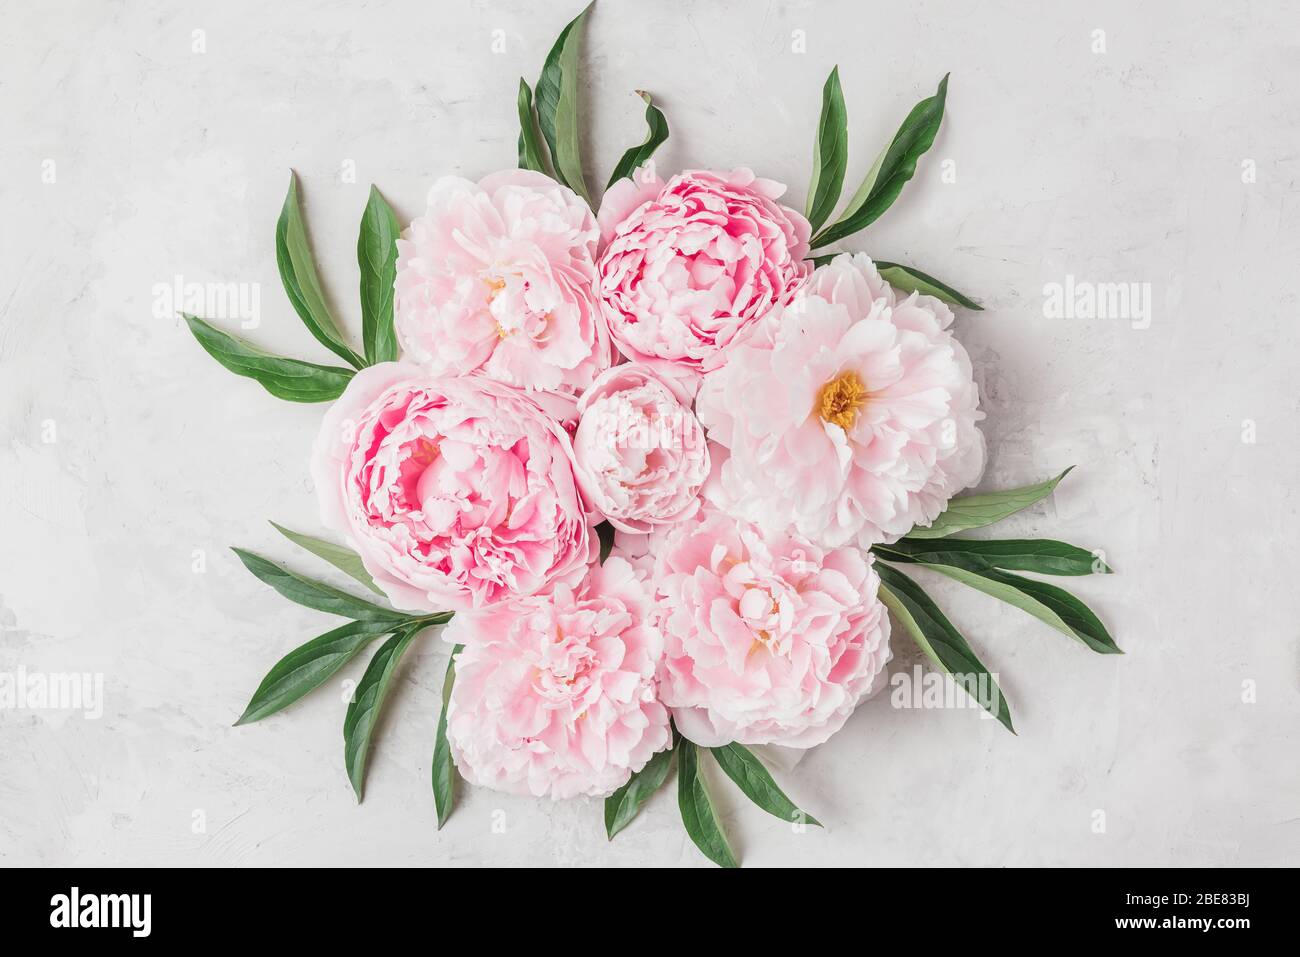 Composición de las flores. Corona hecha de flores de peony rosa sobre fondo blanco. Vista superior plana con espacio de copia Foto de stock